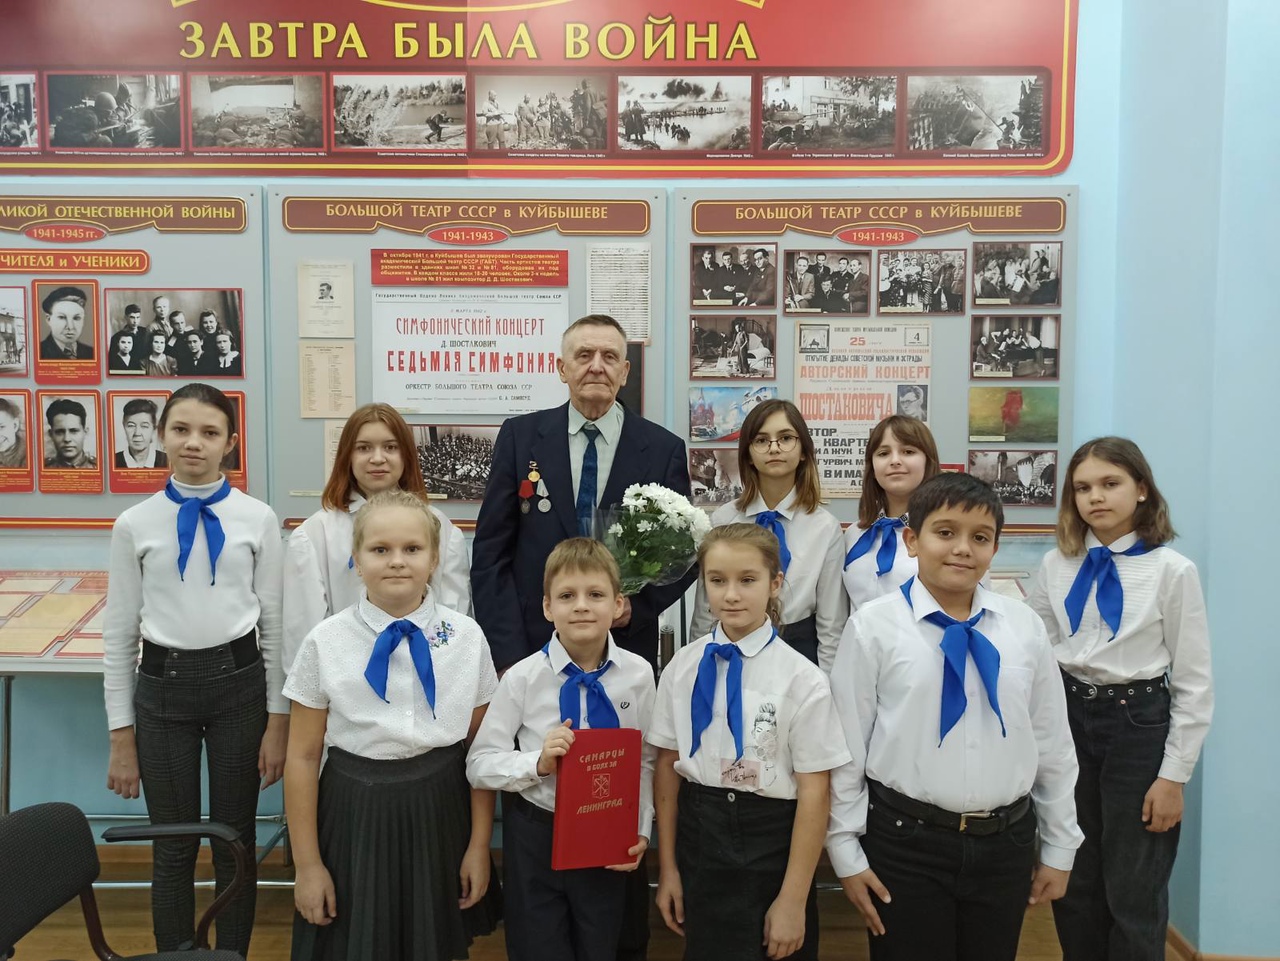 12 декабря в музее нашей школы прошел Урок Мужества, посвященный Блокаде Ленинграда, начавшейся осенью 1941 года.